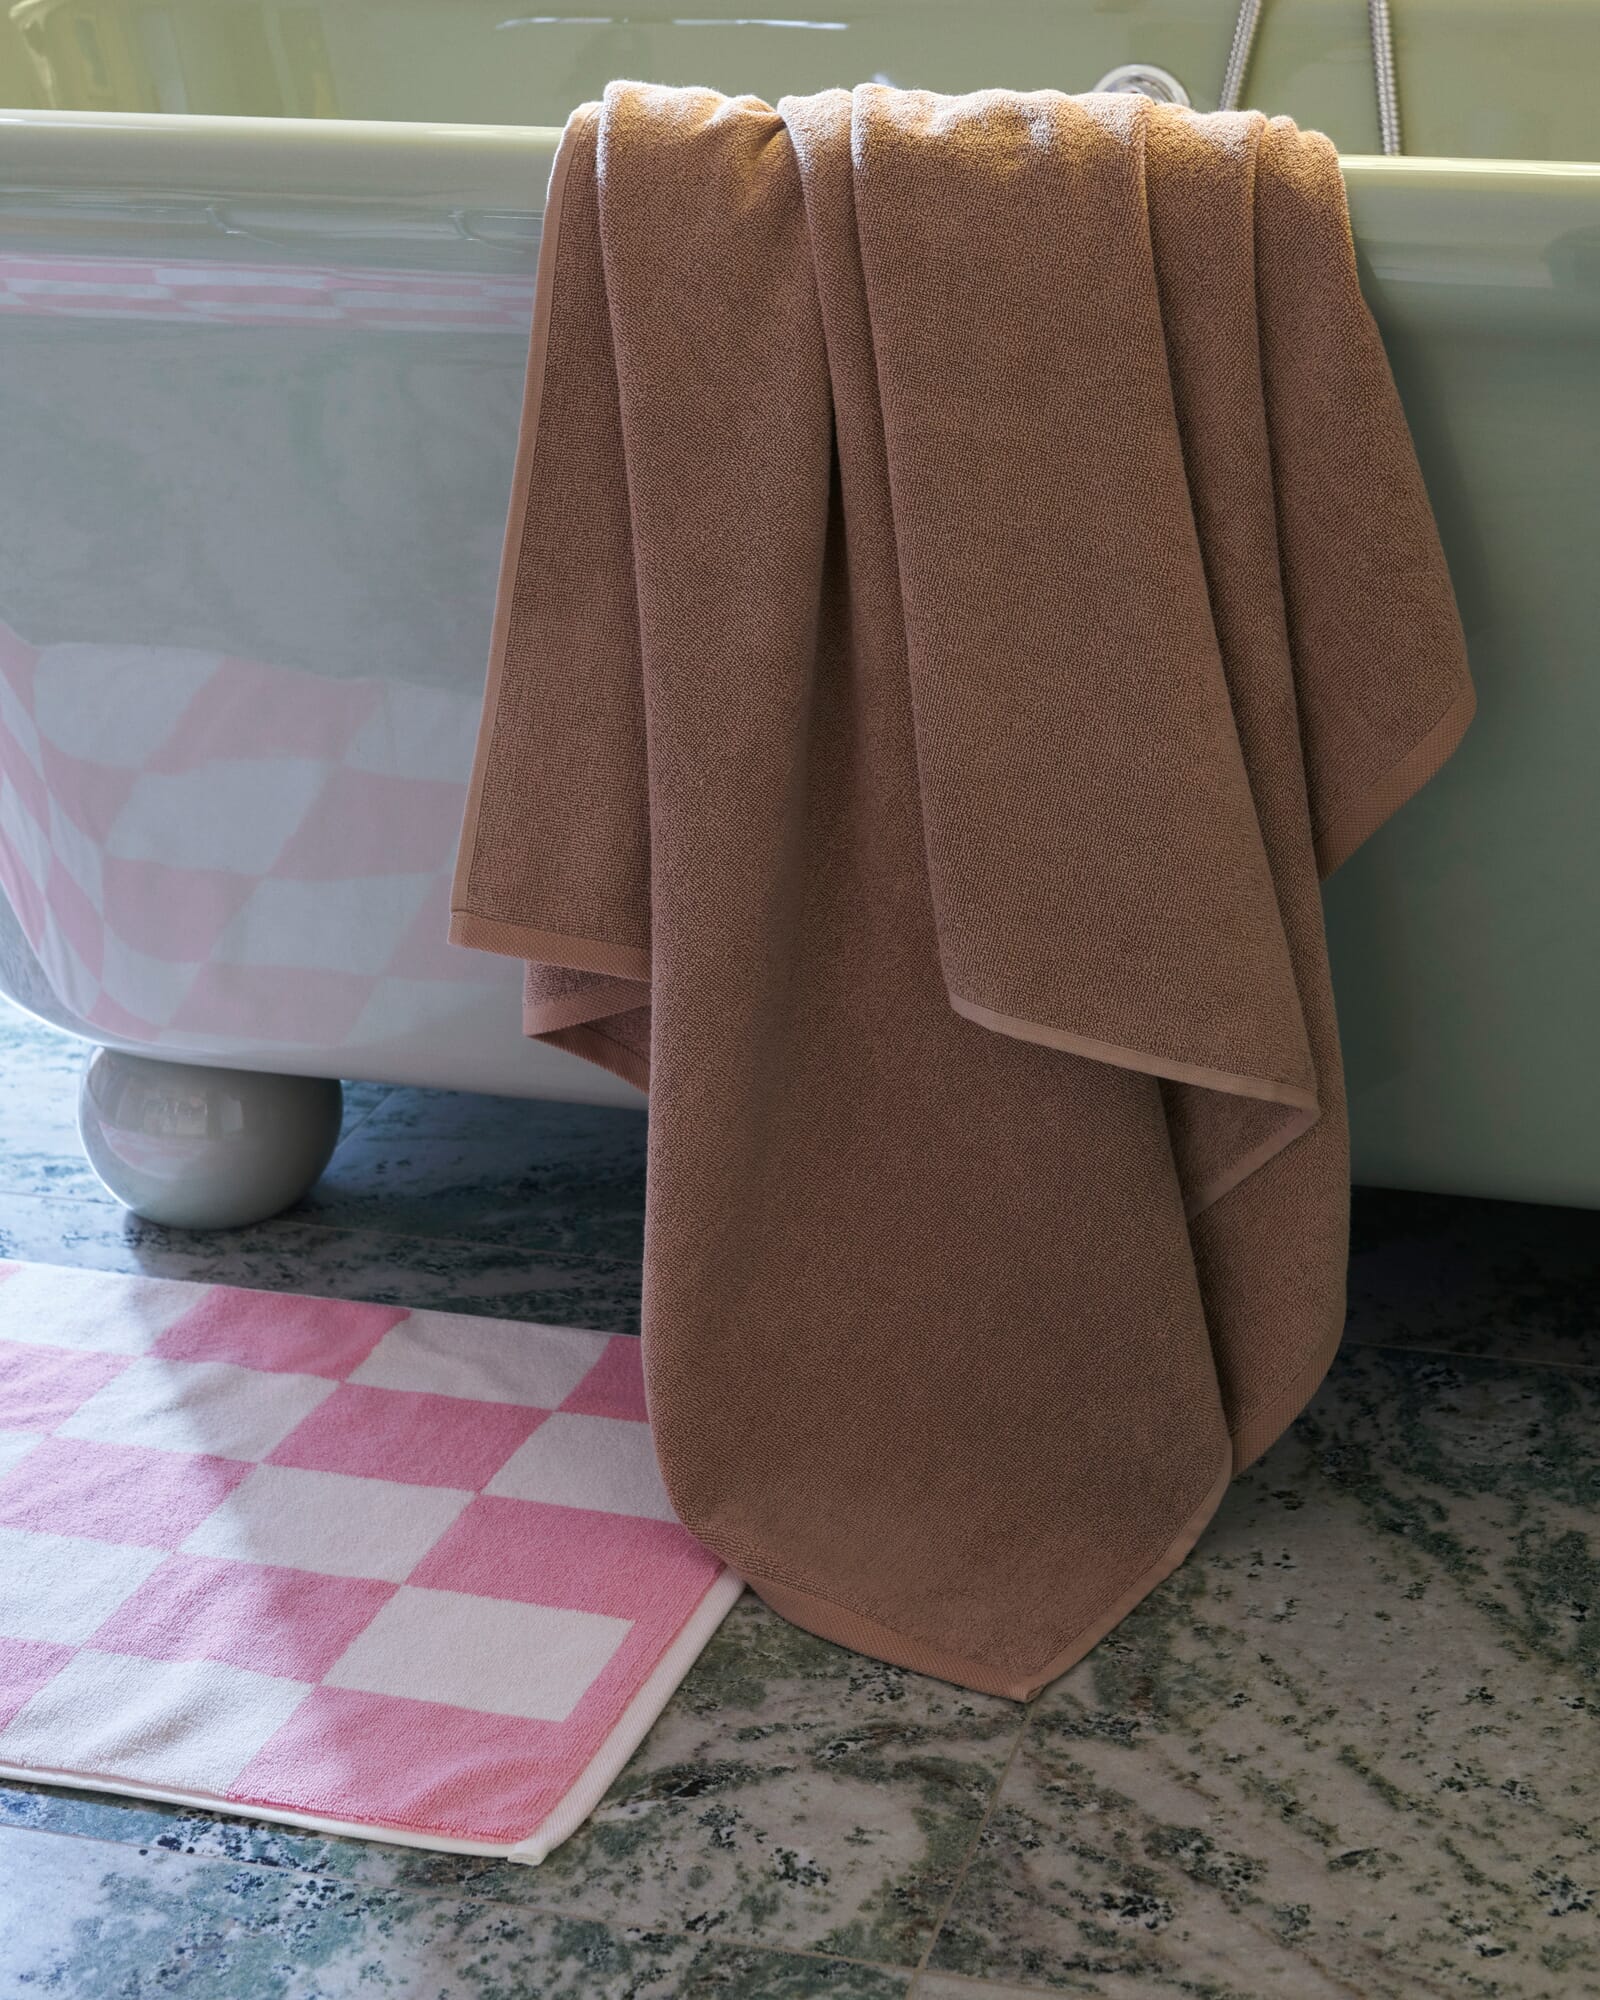 I fare århundrede blad Bath mat Check, Pink | Manufactum